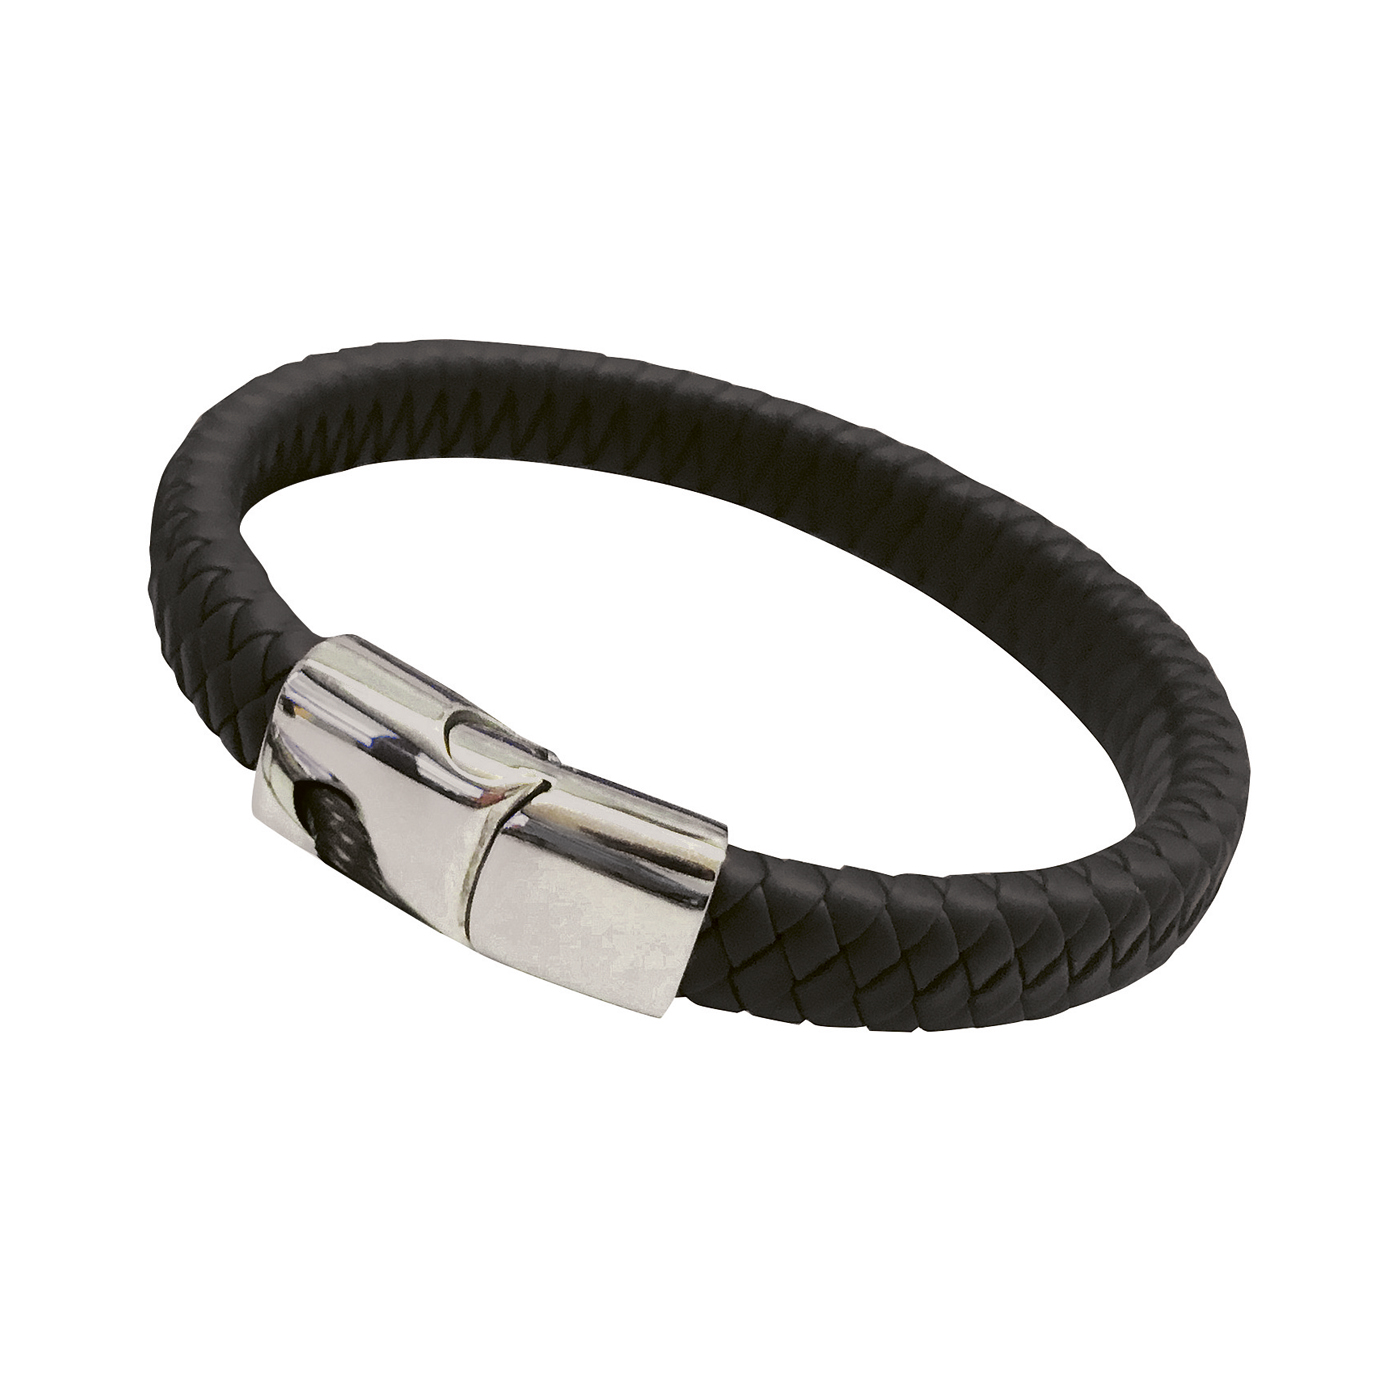 Kautschuk-Armband, schwarz, Länge 21 cm - 1 Stück